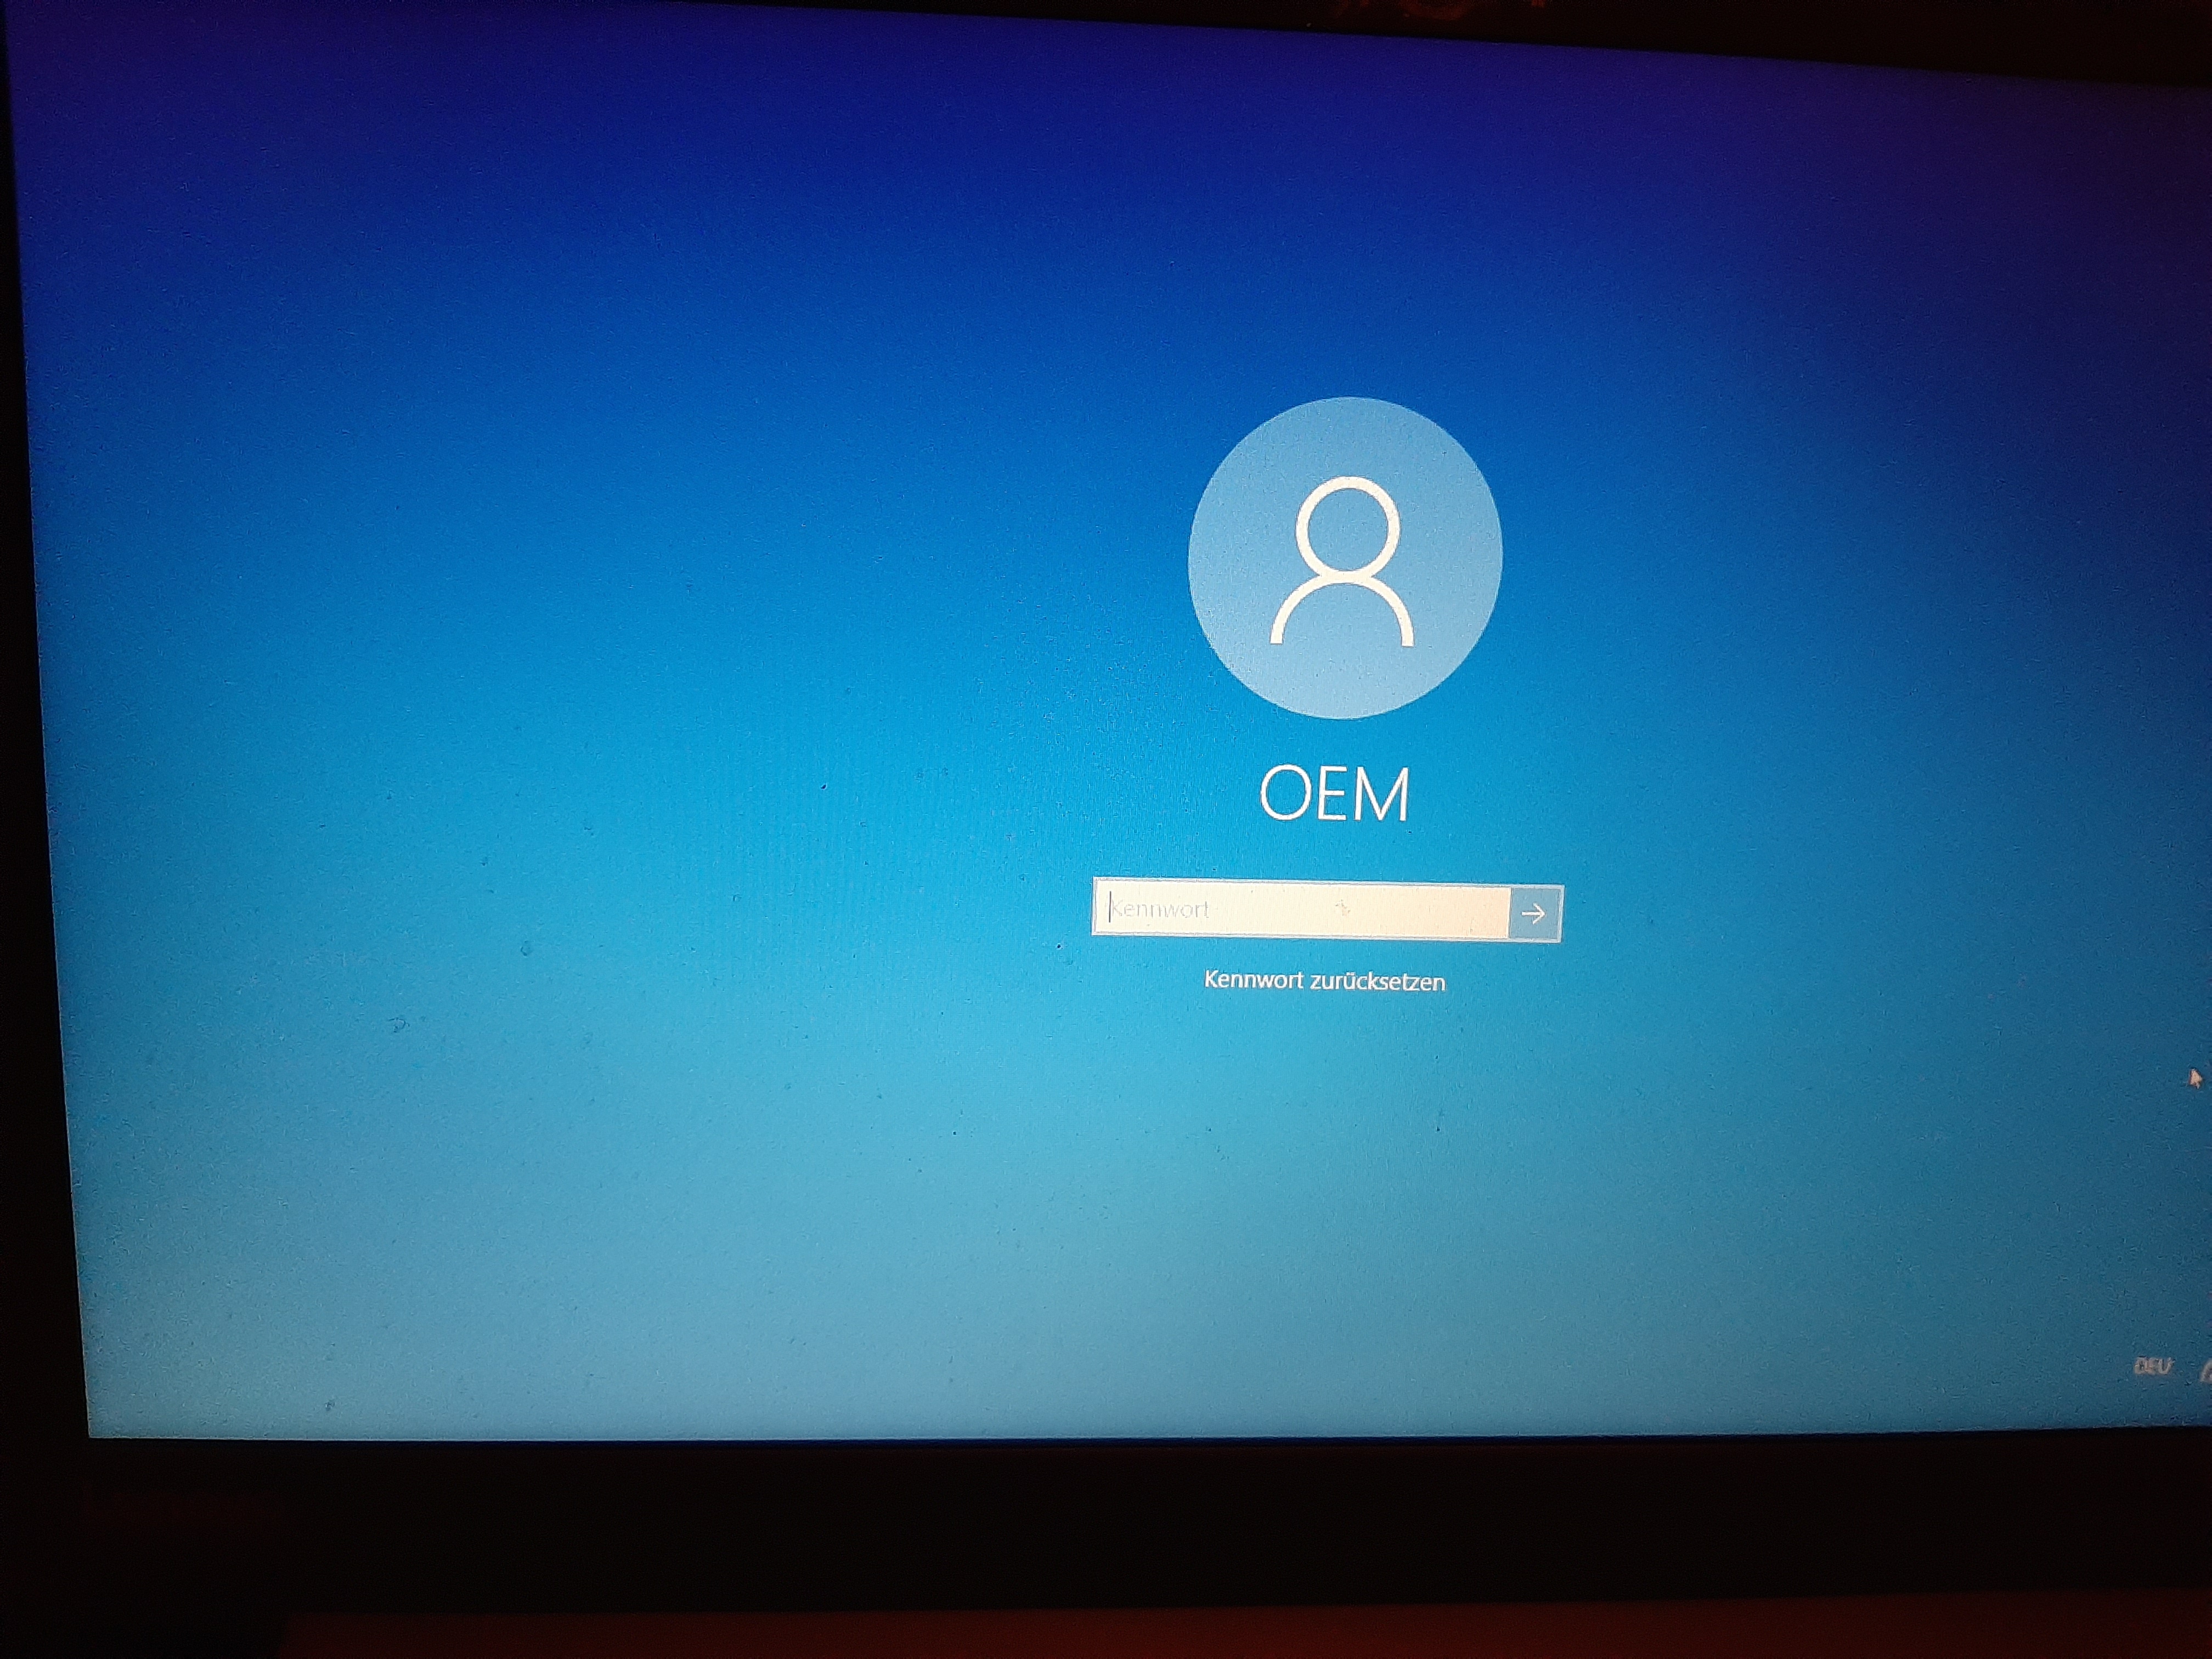 Start von Windows, OEM passwort wird abgefragt!